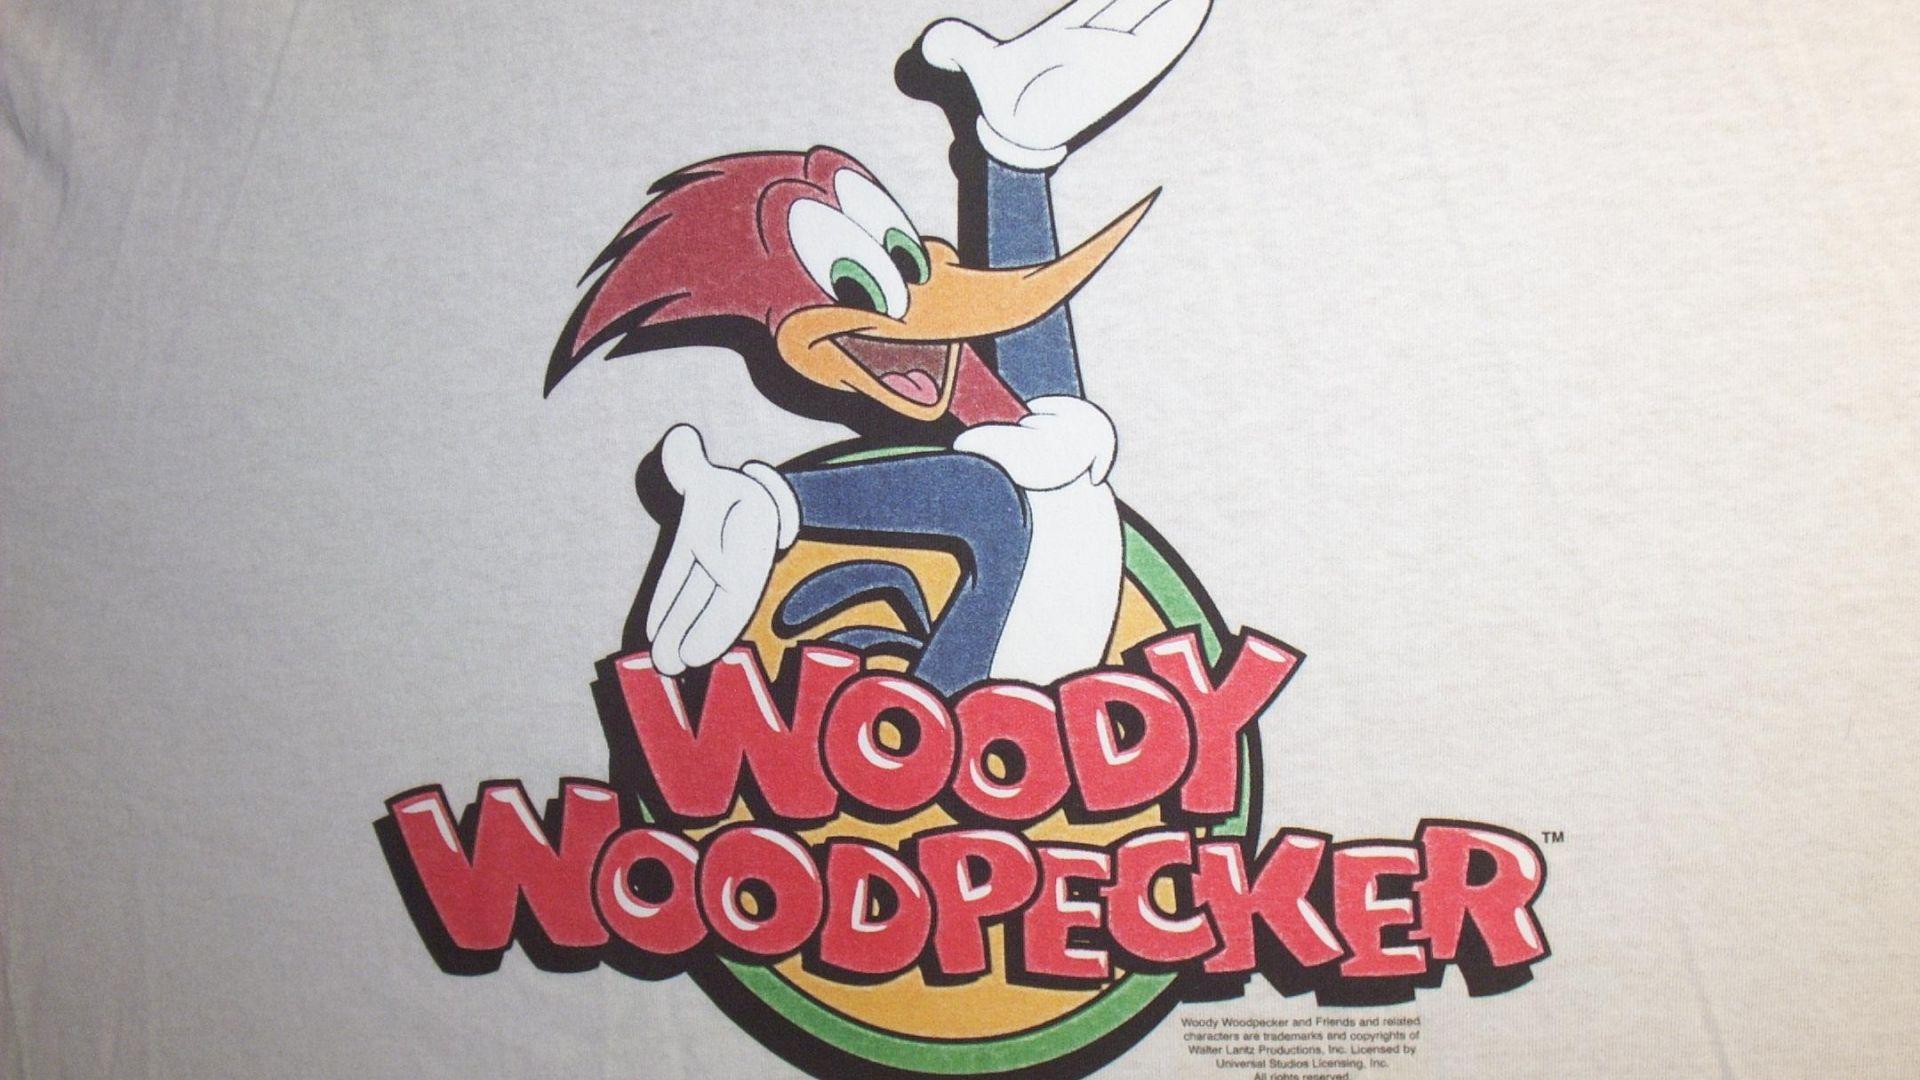 2160x1440px Woody Woodpecker Wallpaper